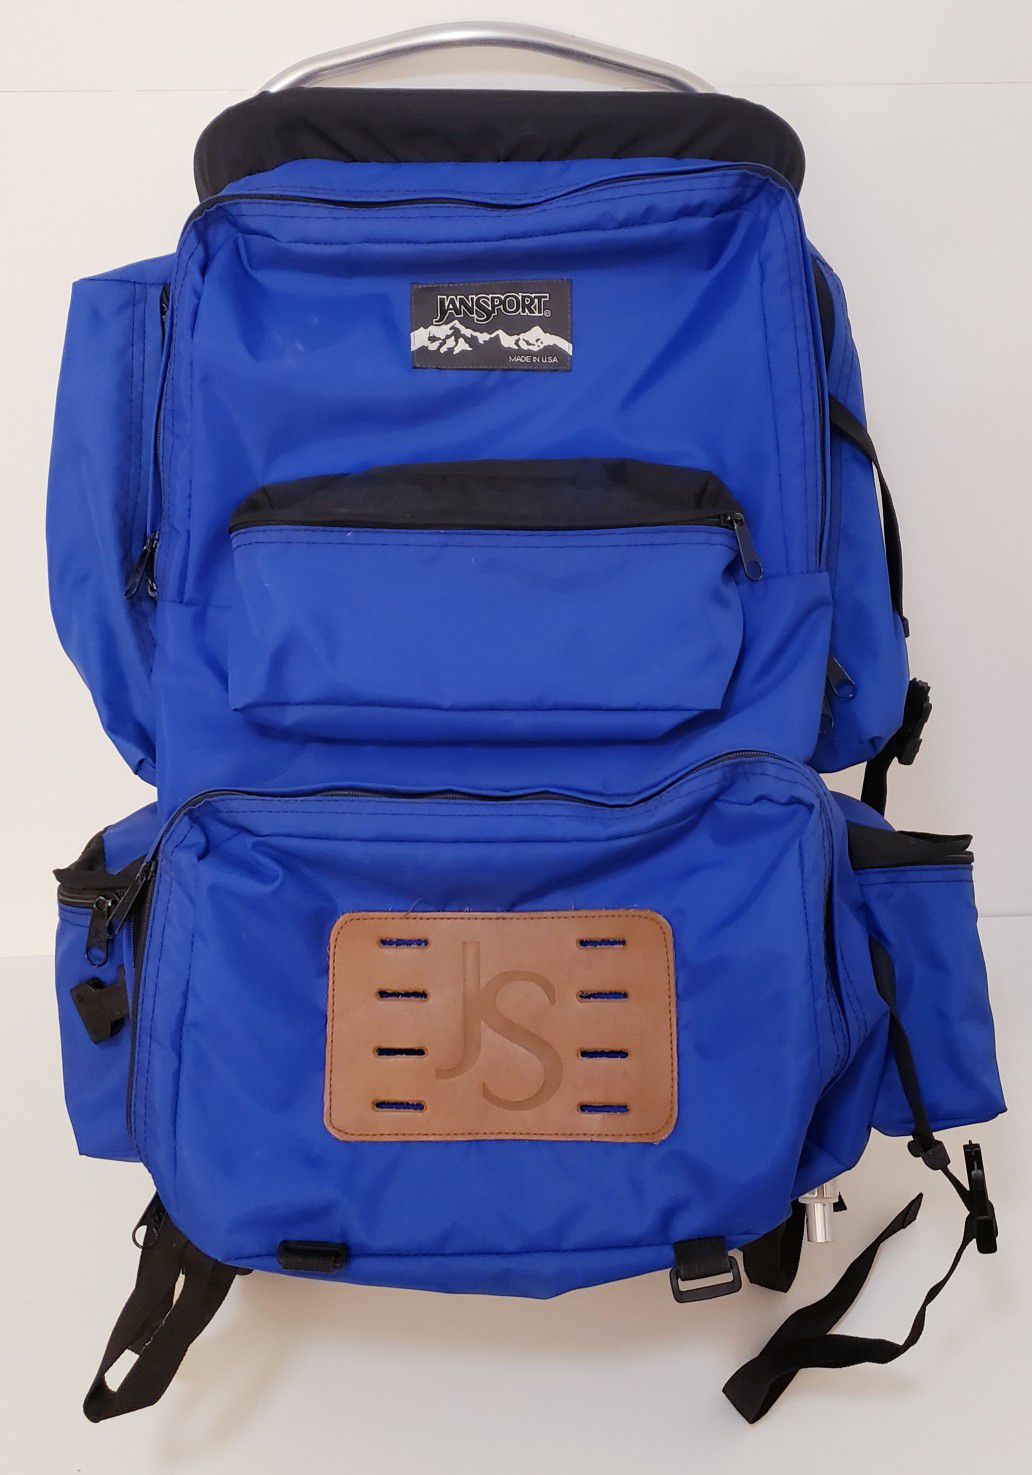 Rare Vintage Jansport External Frame Blue Backpack +Hip Wings Made in USA Hiking/Camping Color(Blue/Black)